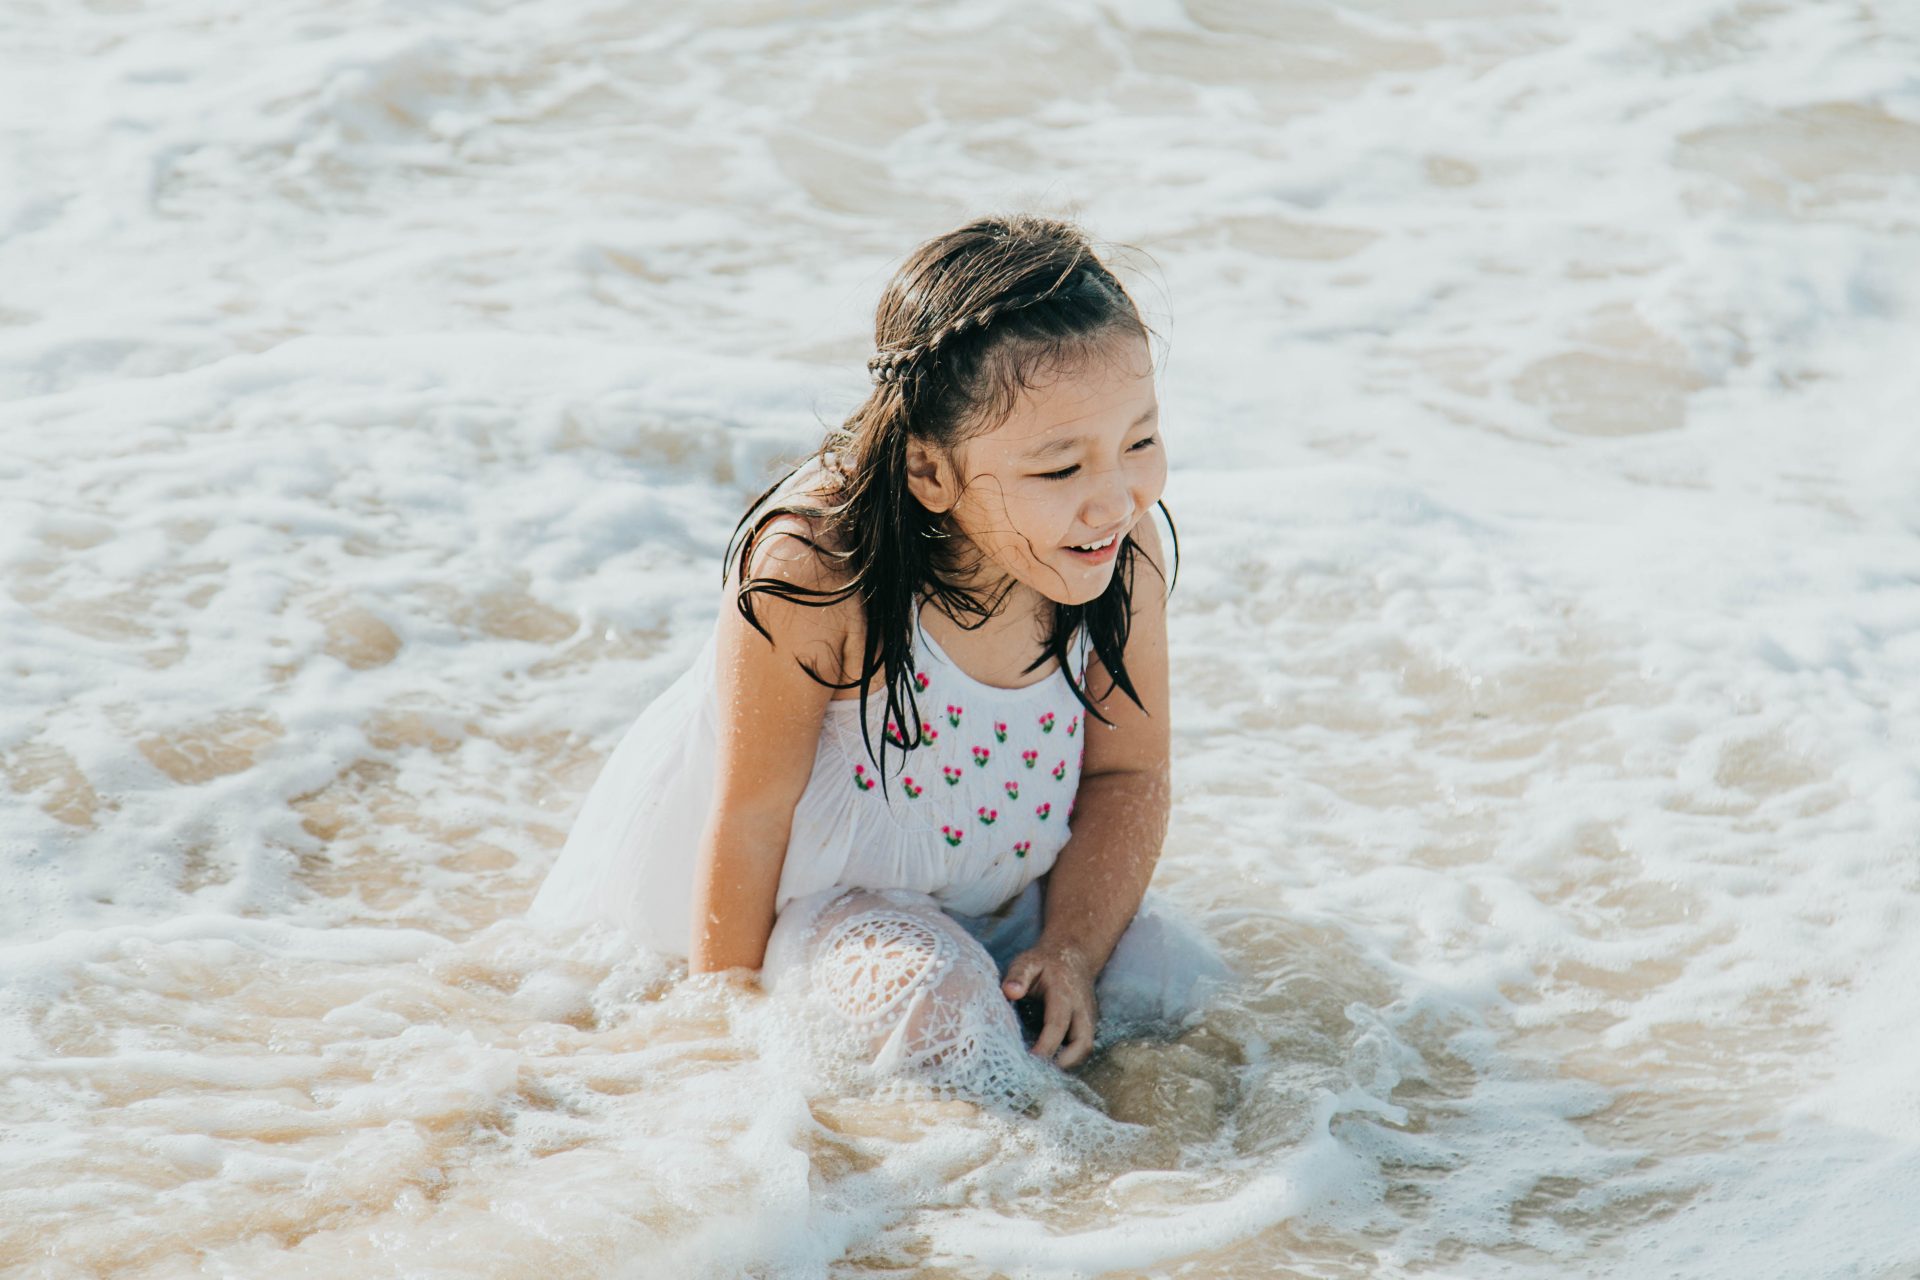 Hãy để chúng tôi giúp bạn tạo ra những bức ảnh gia đình đẹp nhất ngay trên bãi biển. Những bức ảnh tươi trẻ, đầy năng lượng và ý nghĩa sẽ lưu giữ lại những khoảnh khắc đáng yêu của gia đình bạn.